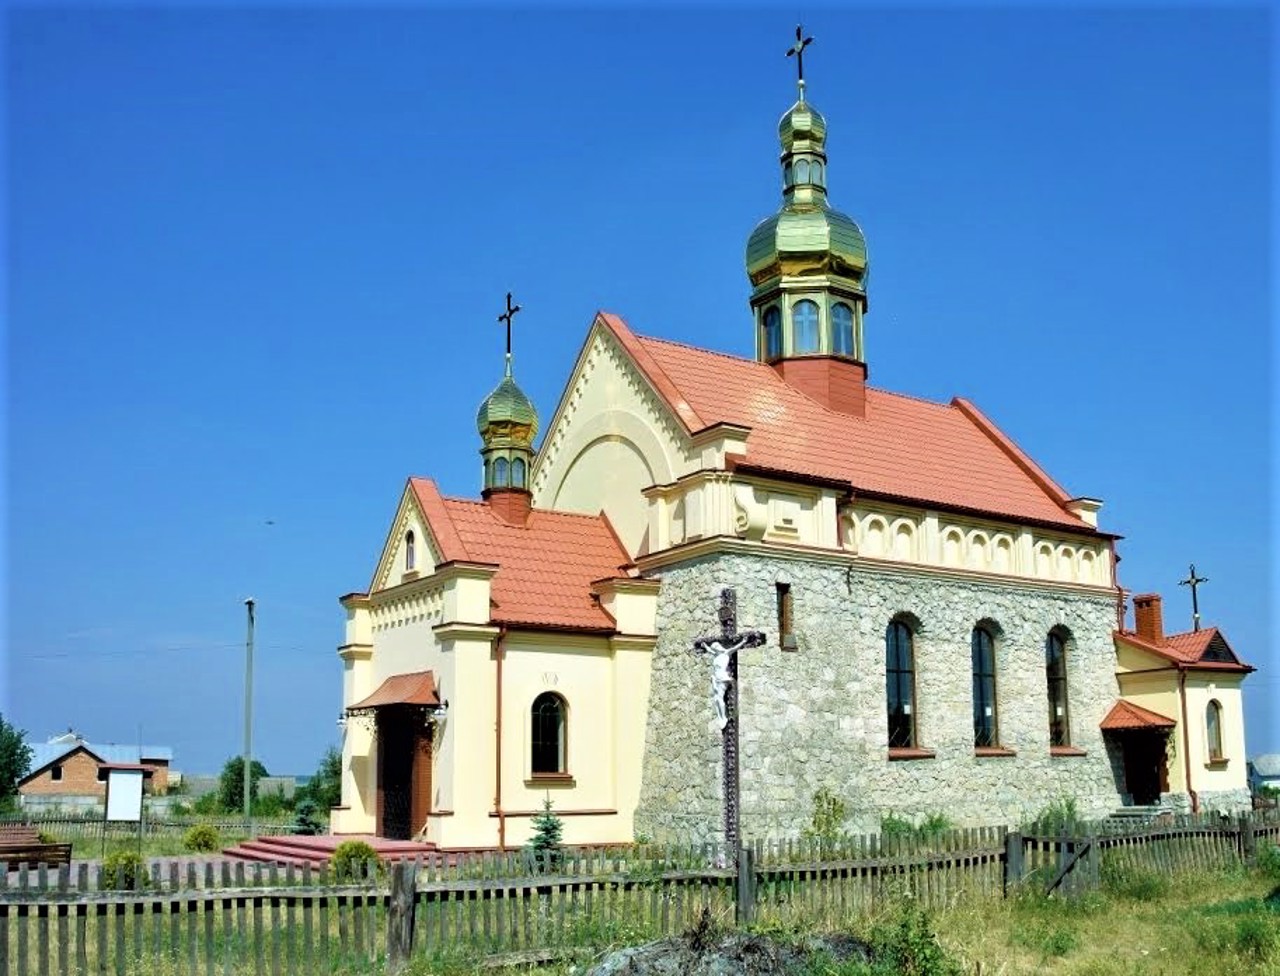 Hlynsk village, Lviv region